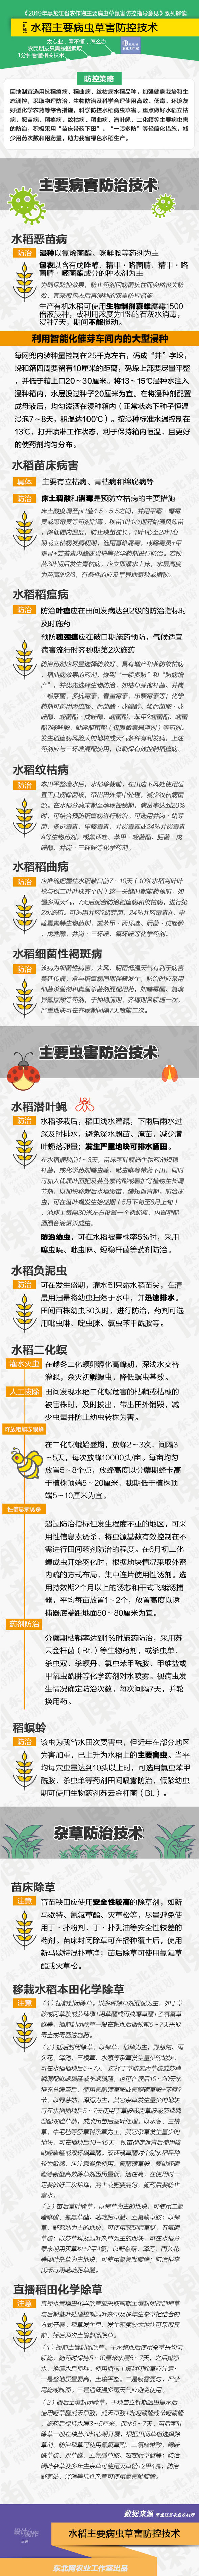 一图看懂黑龙江水稻主要病虫草害防控技术